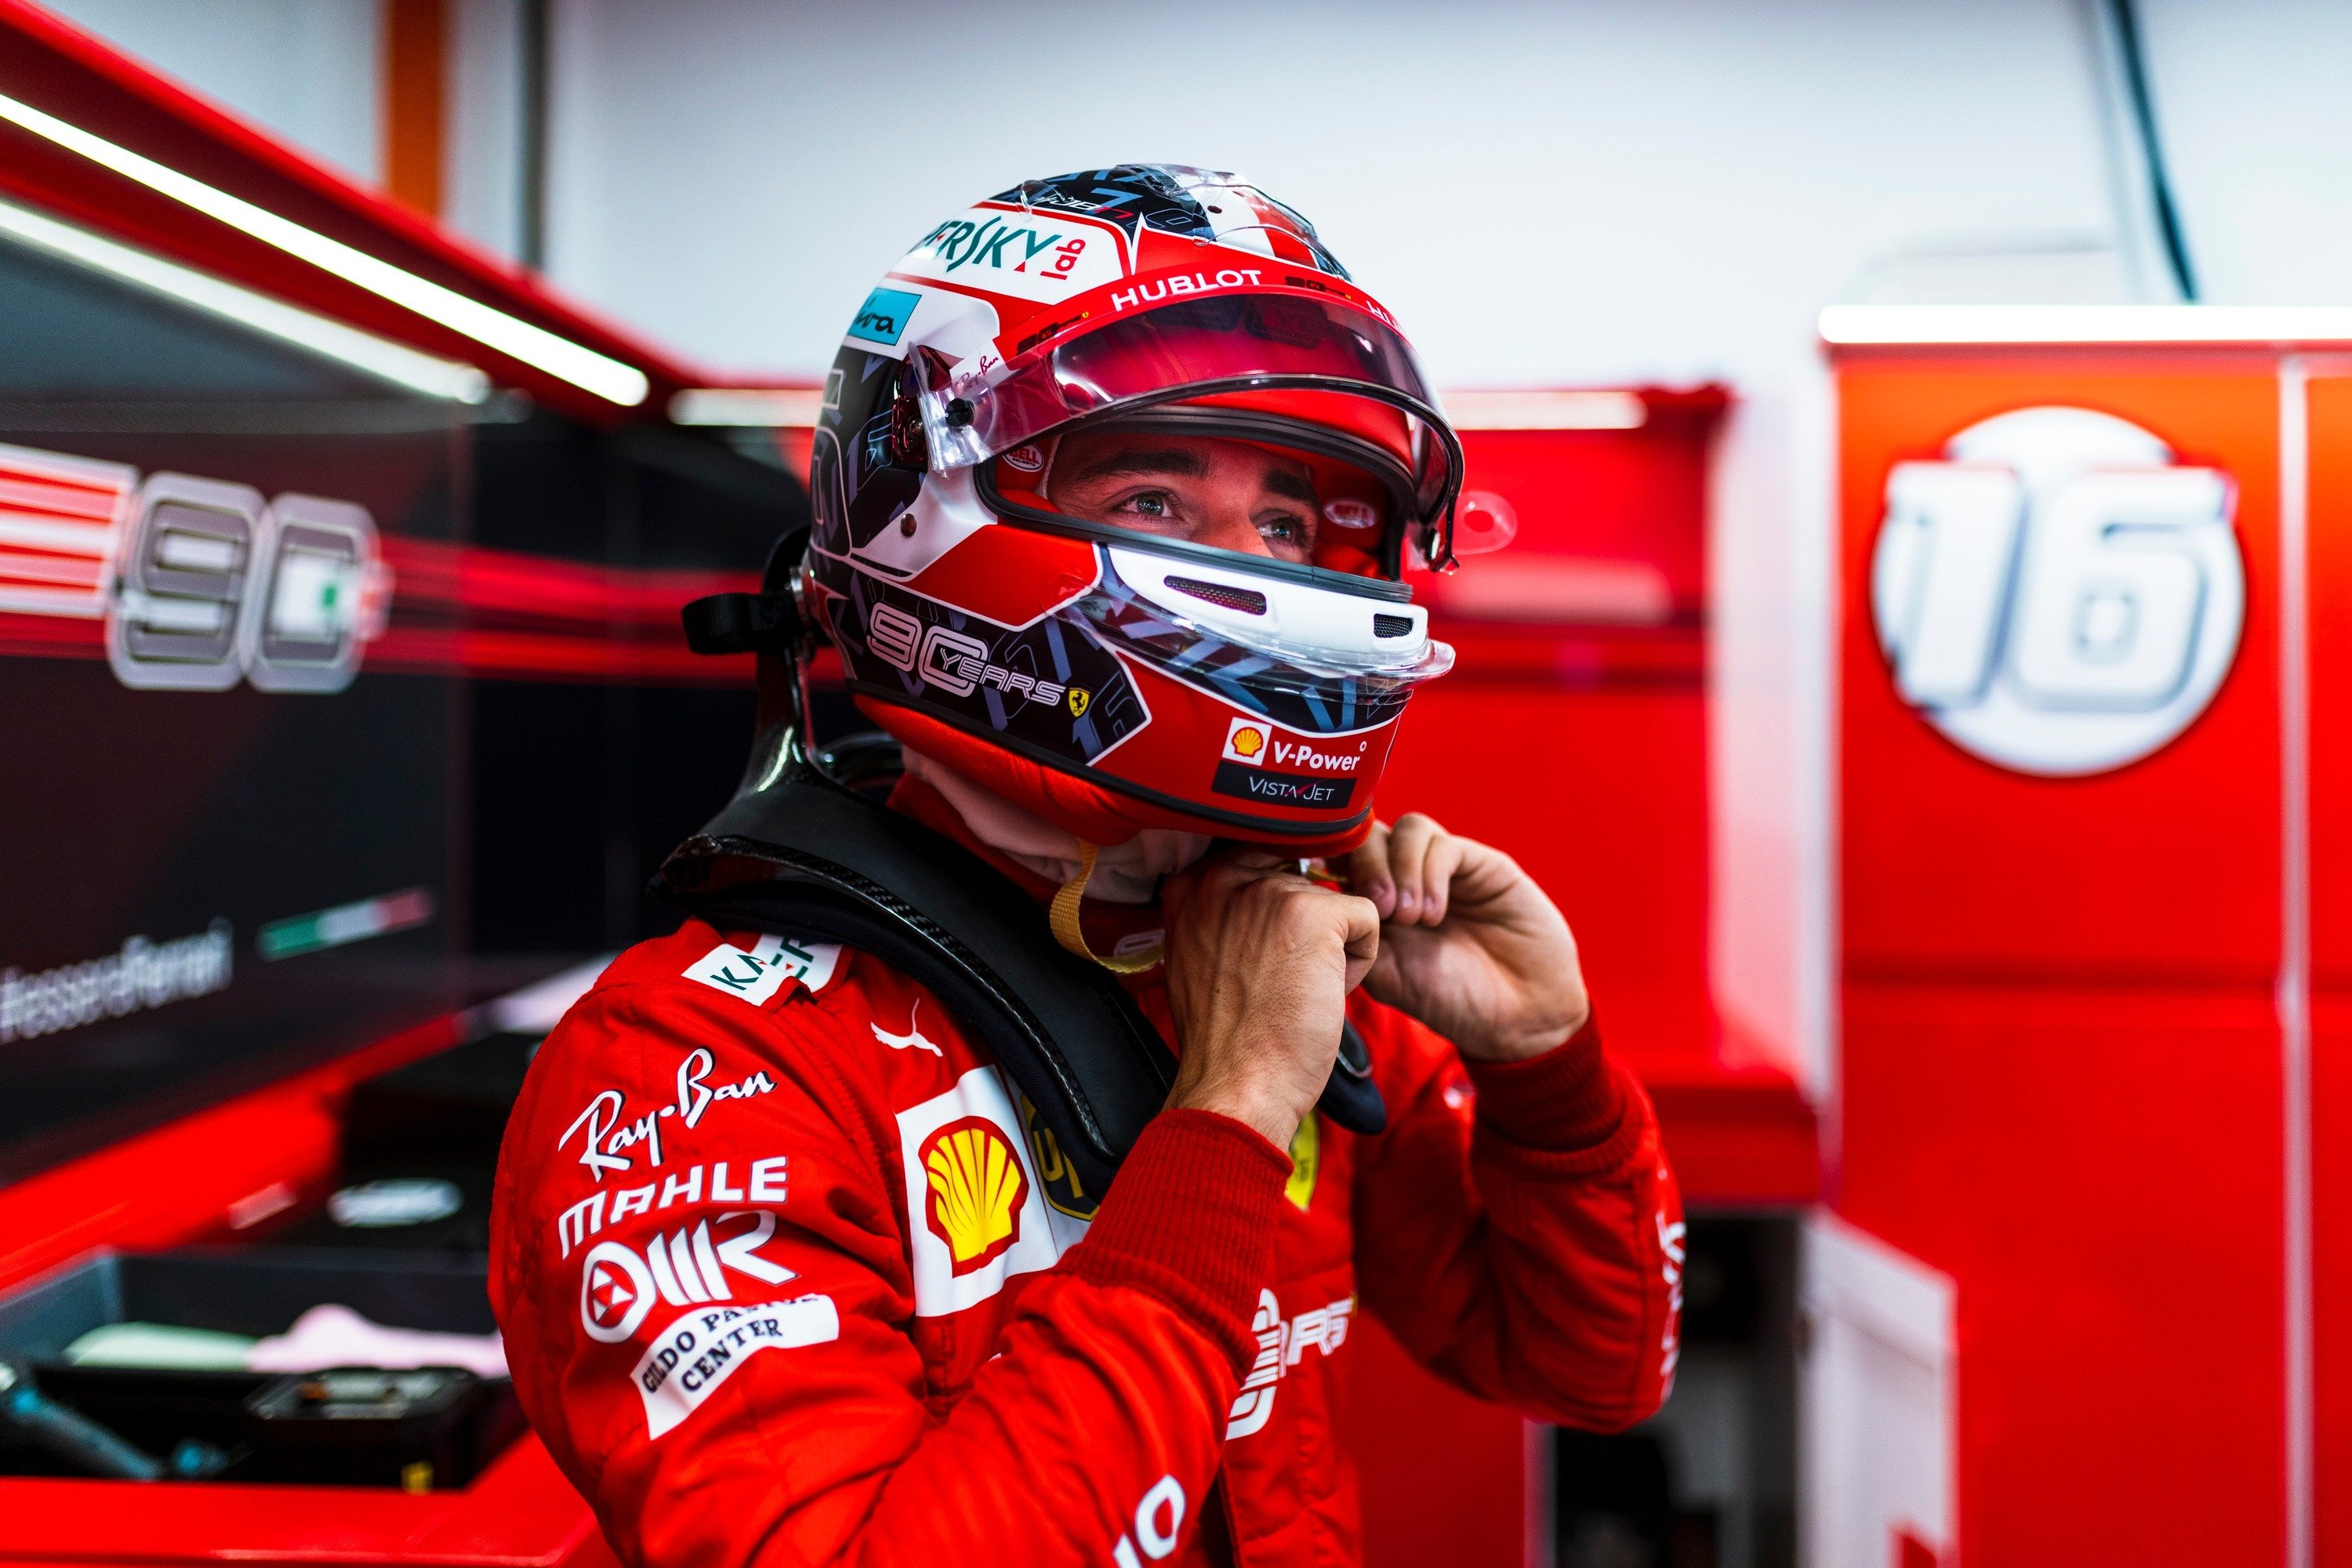 F1, GP Singapore 2019: Leclerc da applausi